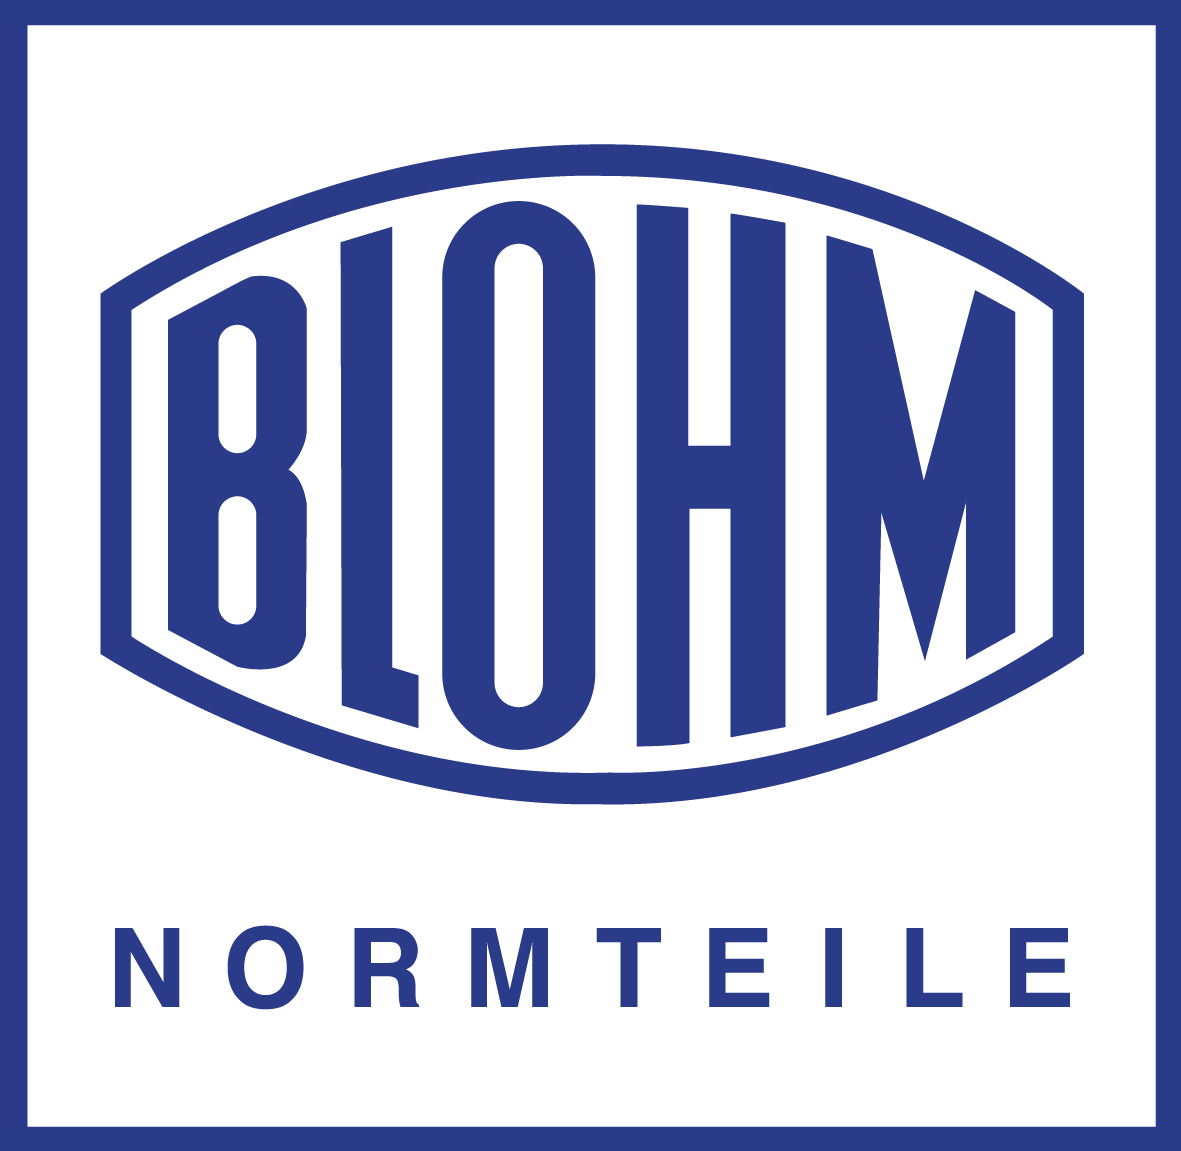 NORMTEILEWERK ROBERT BLOHM GmbH